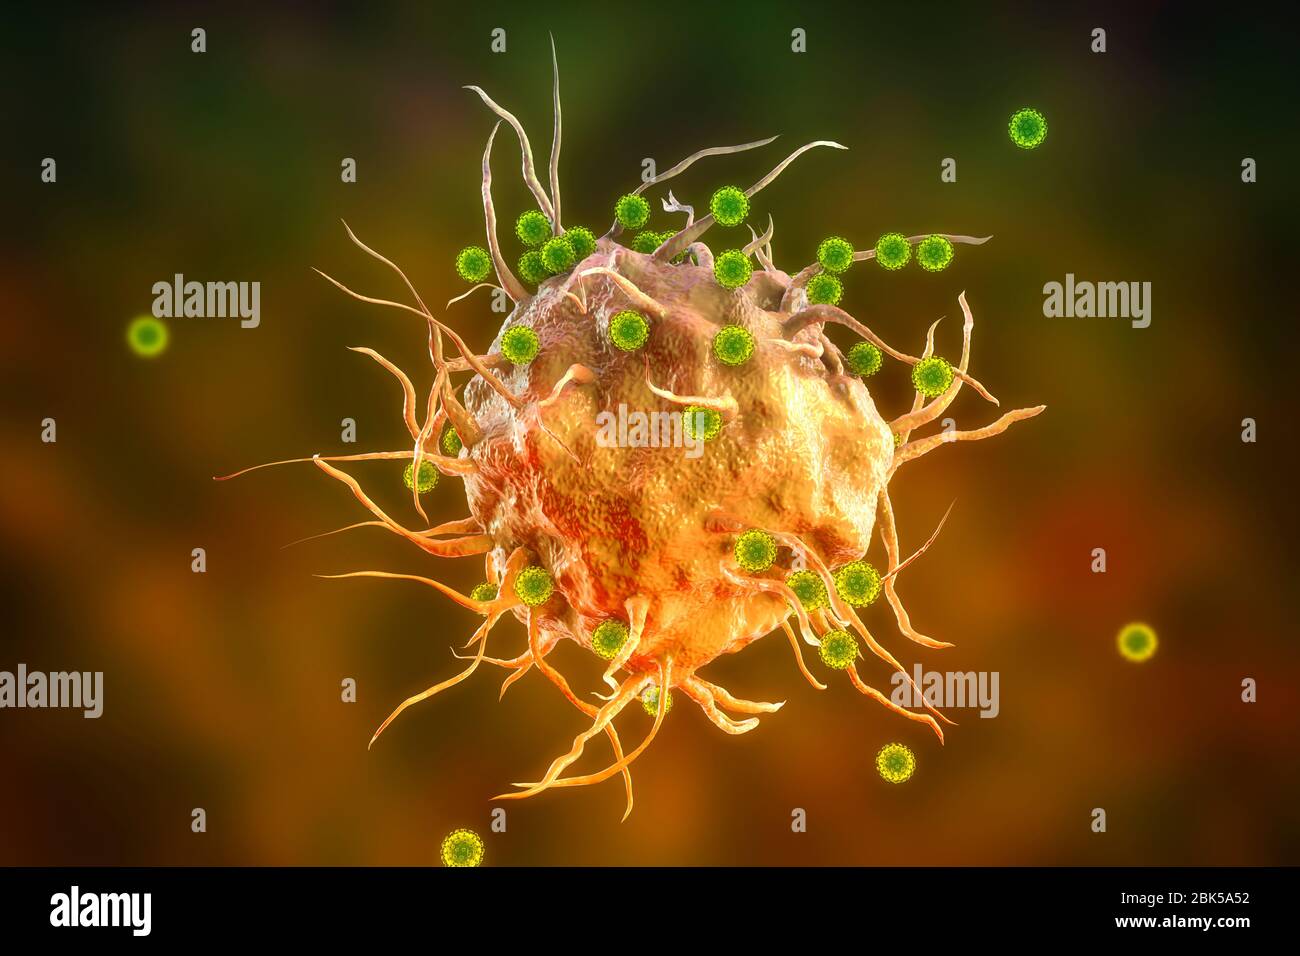 Virus SARS-CoV-2 y células inmunitarias. Imagen conceptual que ilustra la inmunidad antiviral y la vacunación. Foto de stock